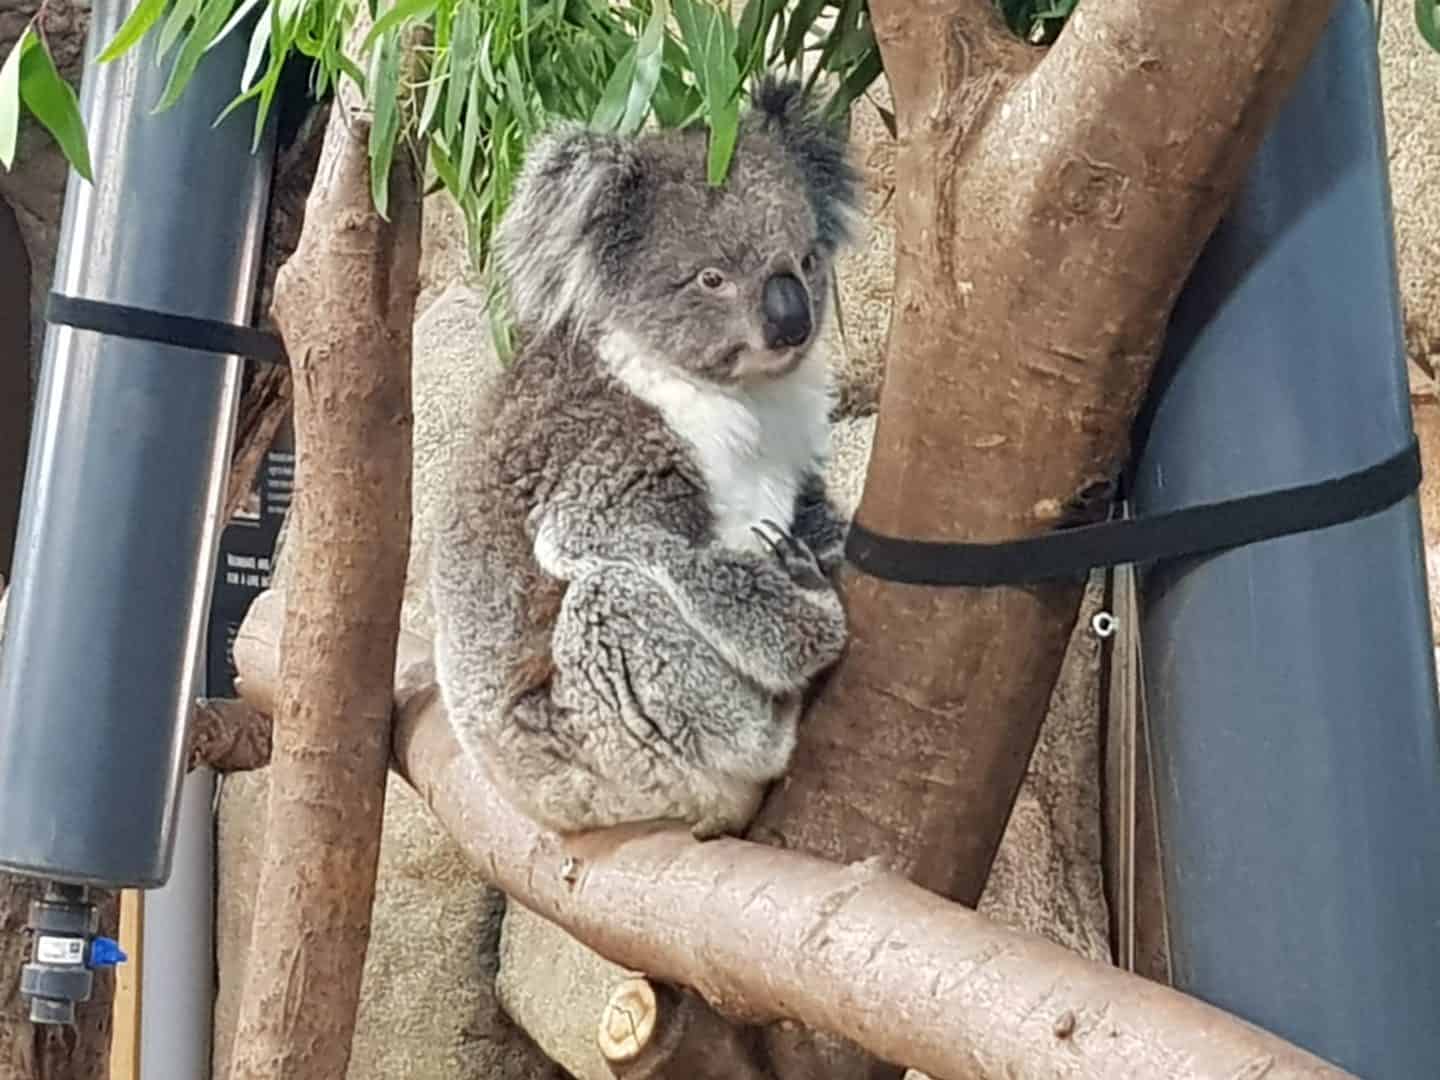 Koala at Longleat Safari Park